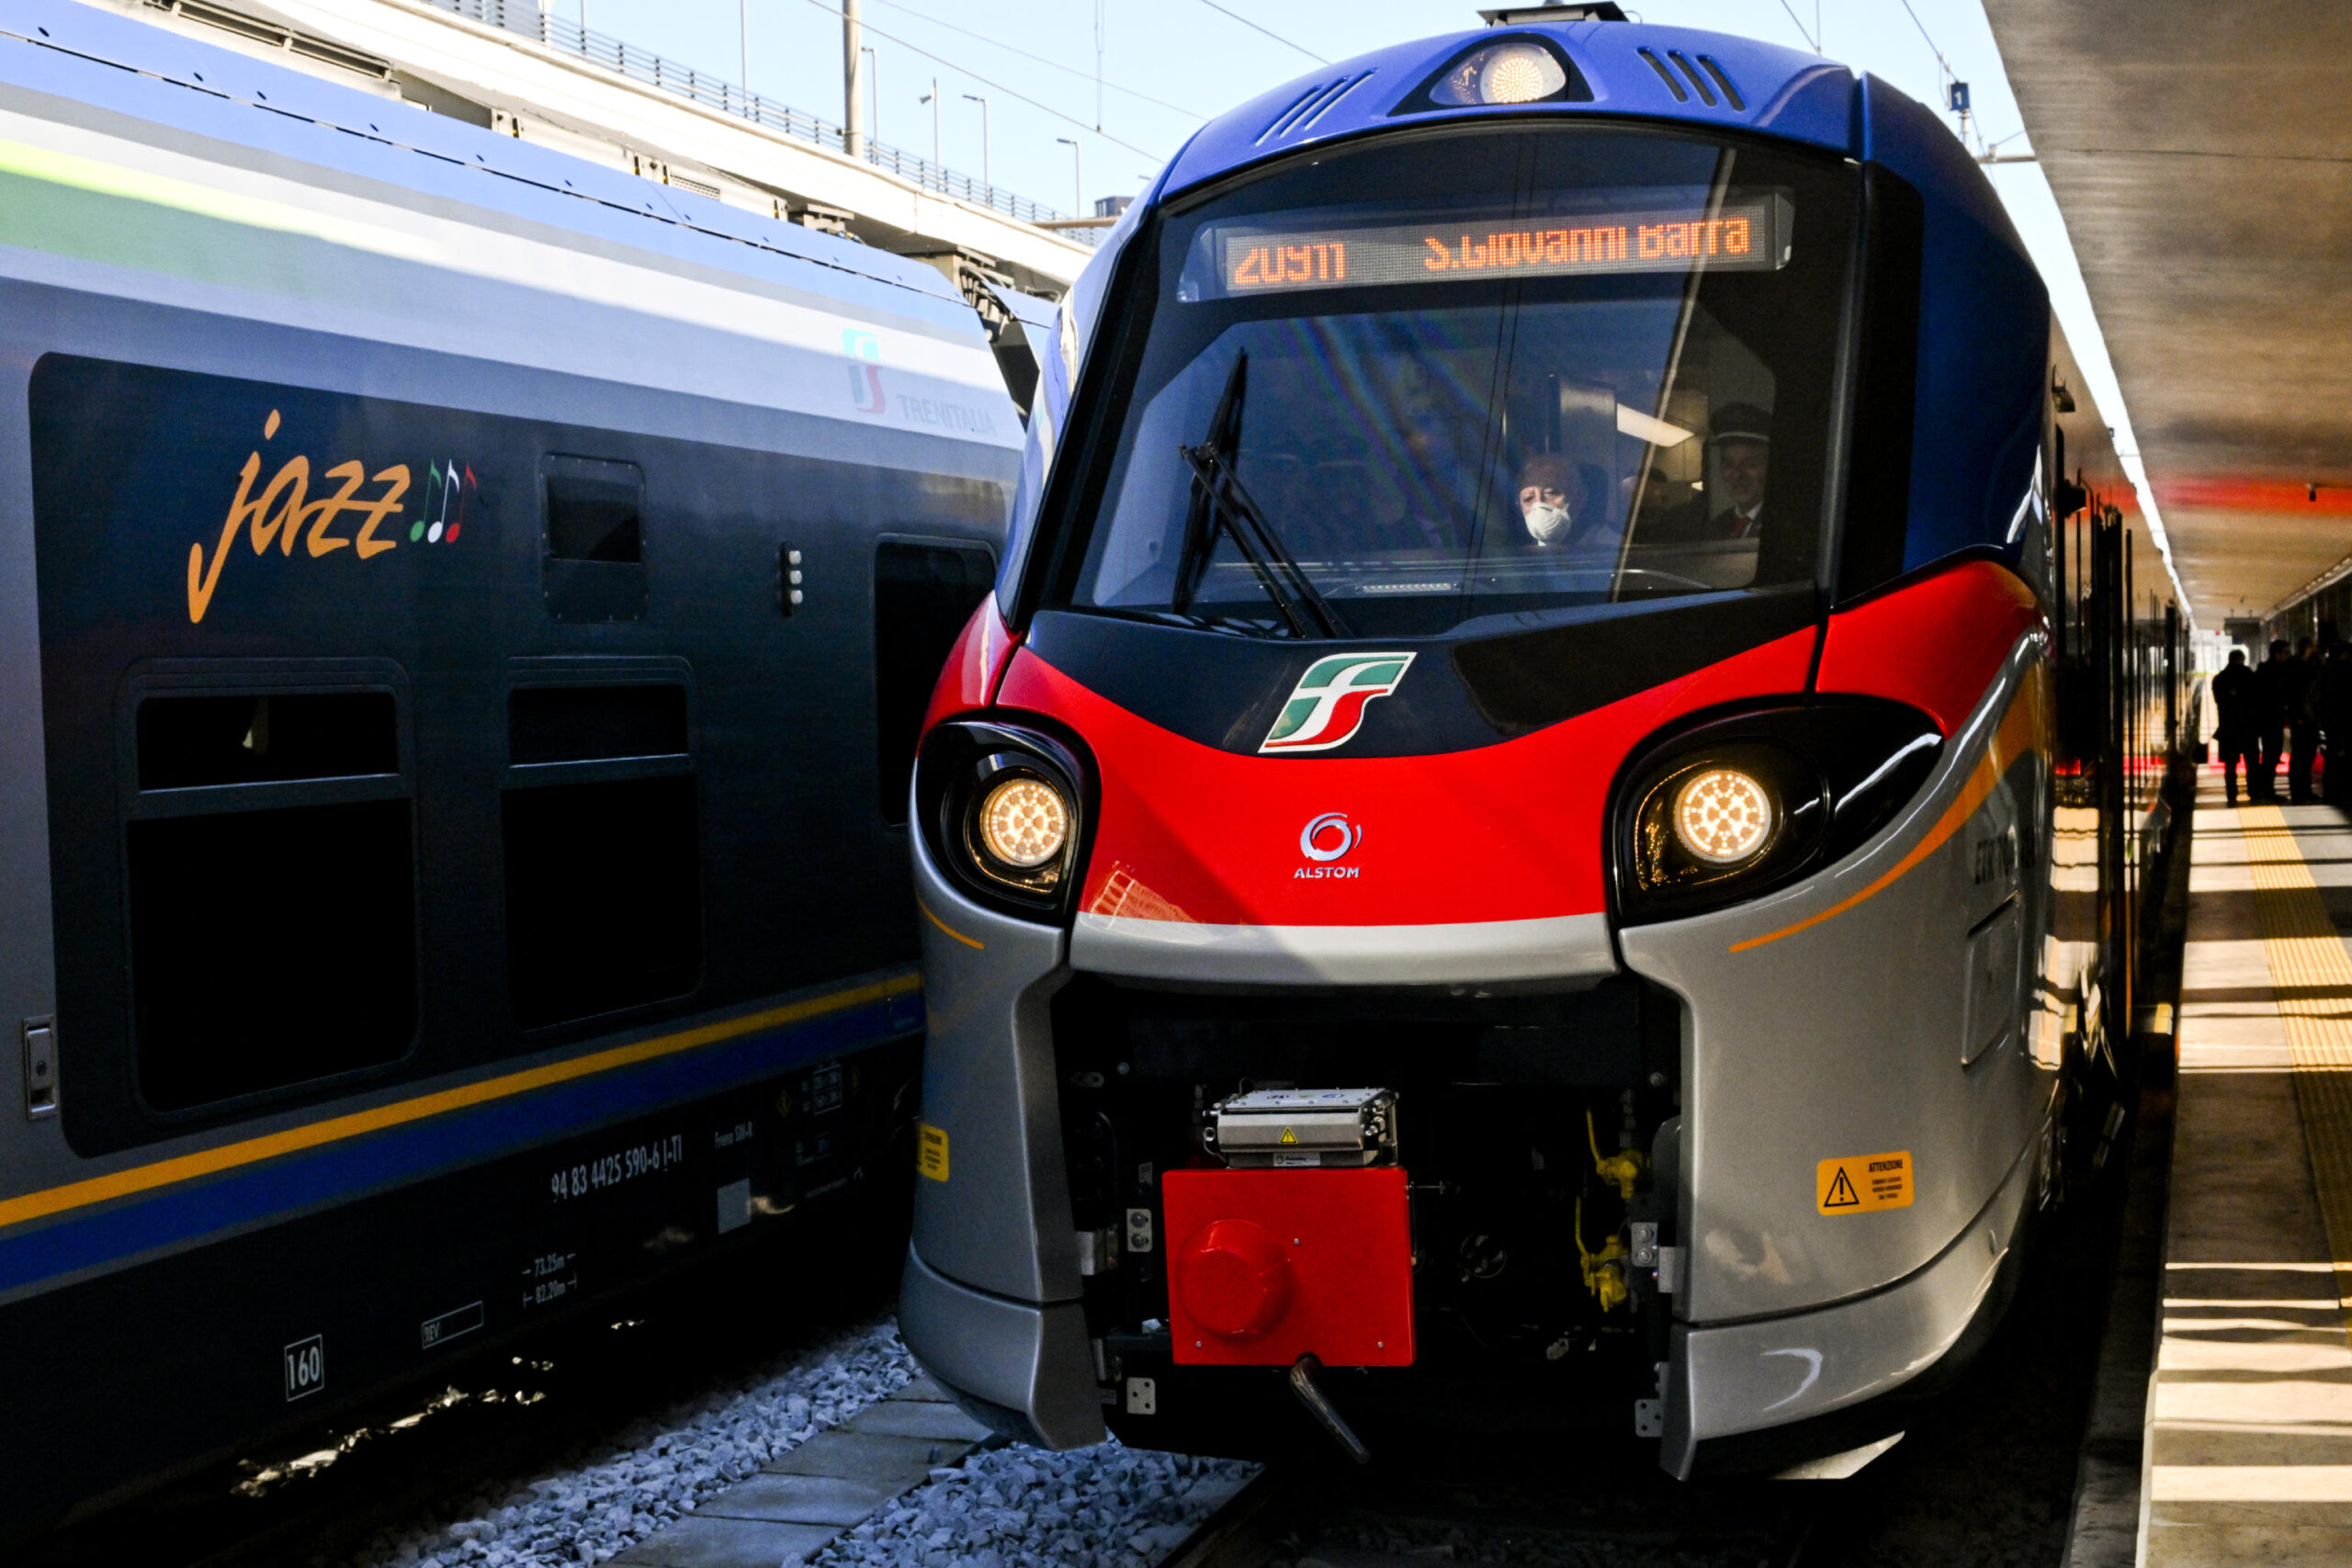 Il presidente della Regione Campania, Vincenzo De Luca, alla Stazione centrale di Napoli dove ha presentato due nuovi treni acquistati dalla sua amministrazione, 19 dicembre 2022.
ANSA